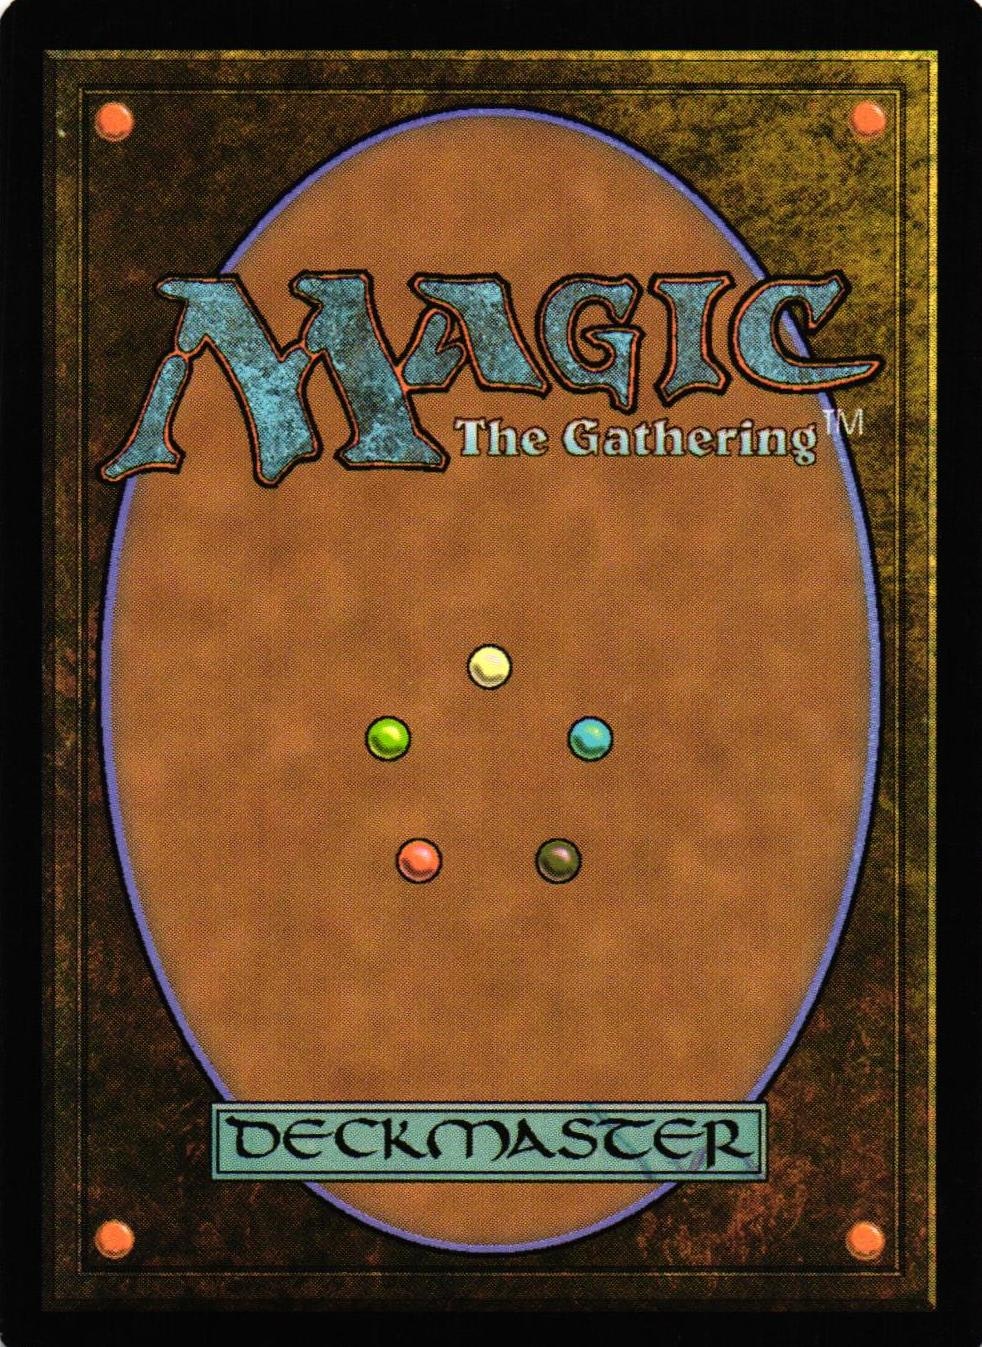 Coerced Confession Uncommon 217/249 Gatecrash (GTC) Magic the Gathering